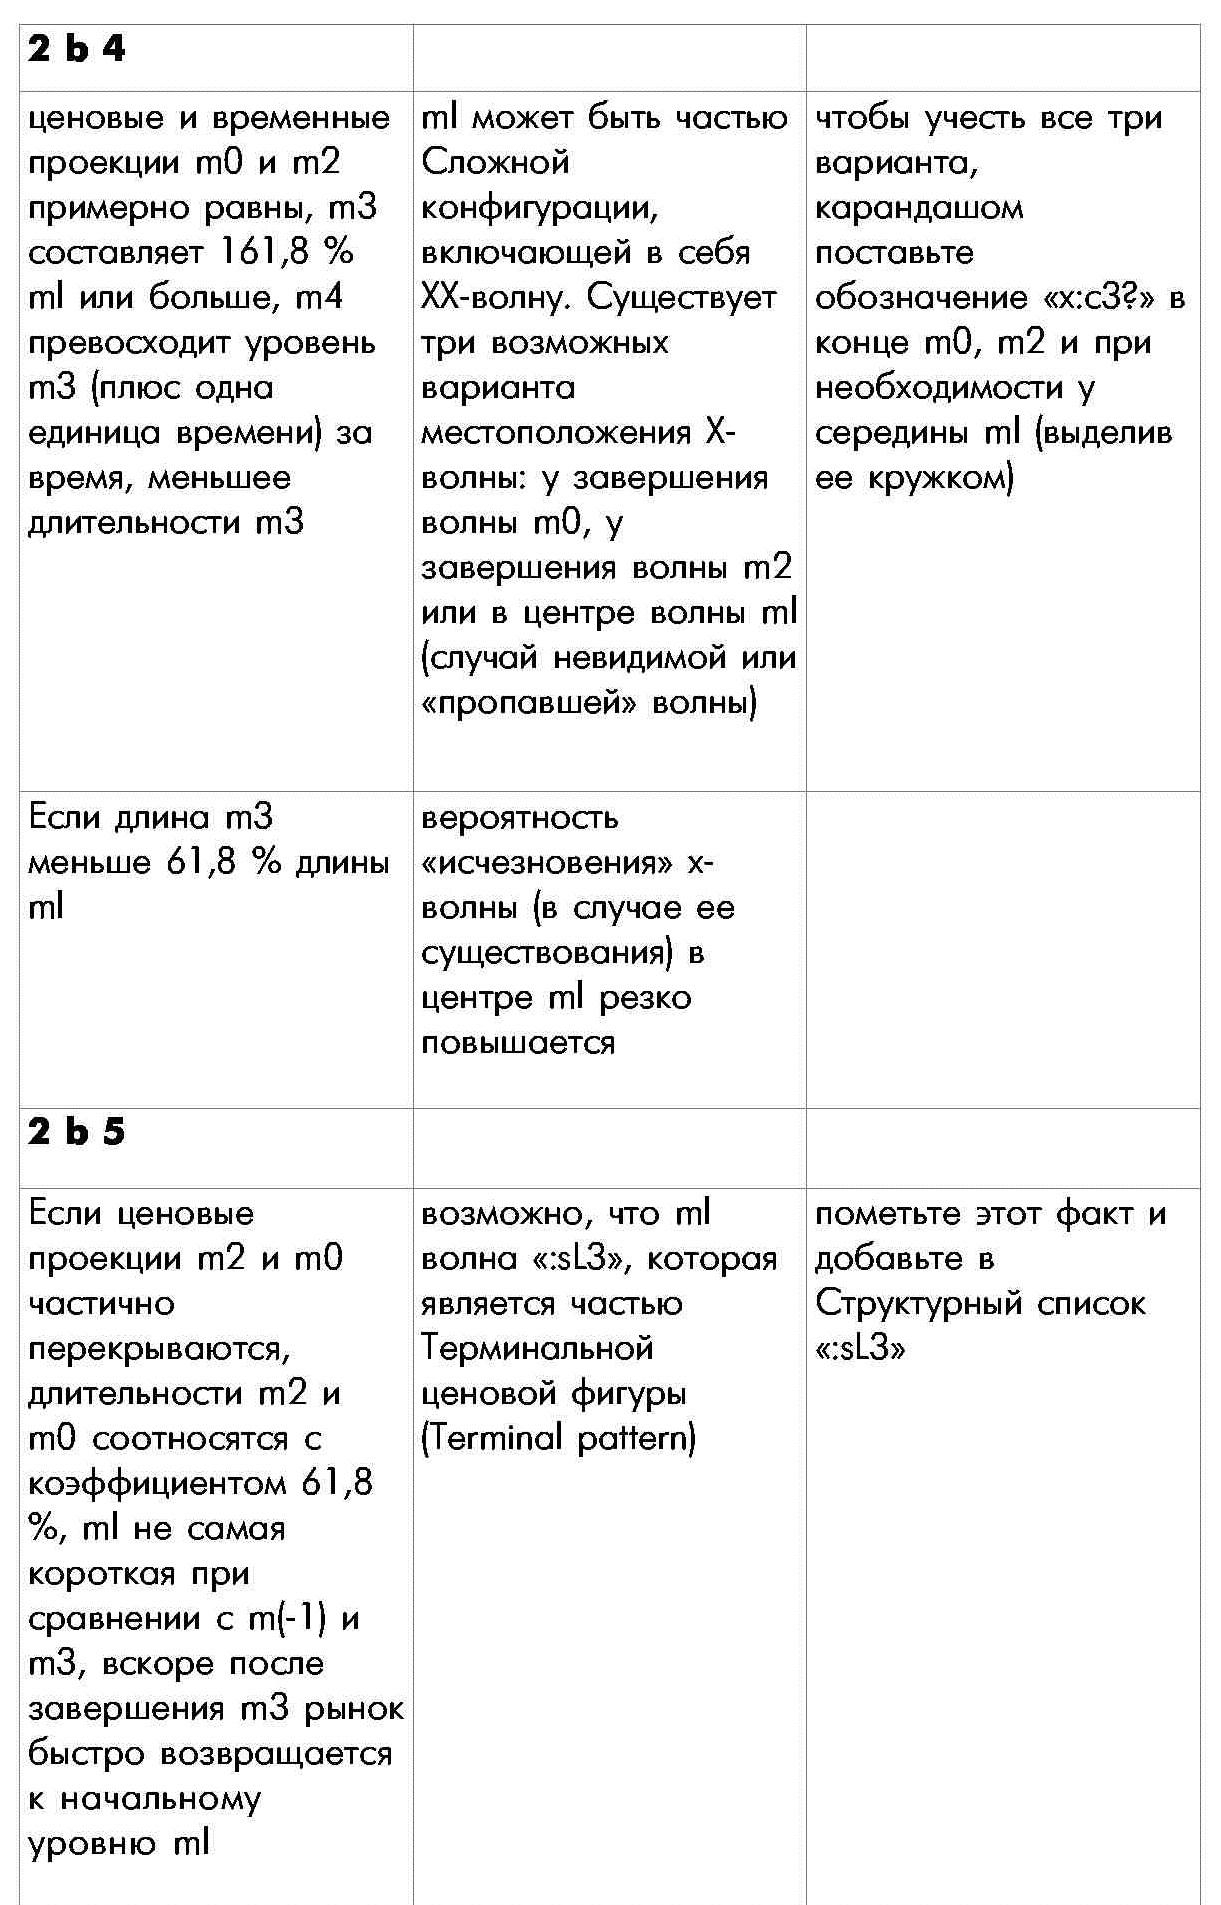 Правило 2 определения внутренней структуры моноволны шестая часть таблицы